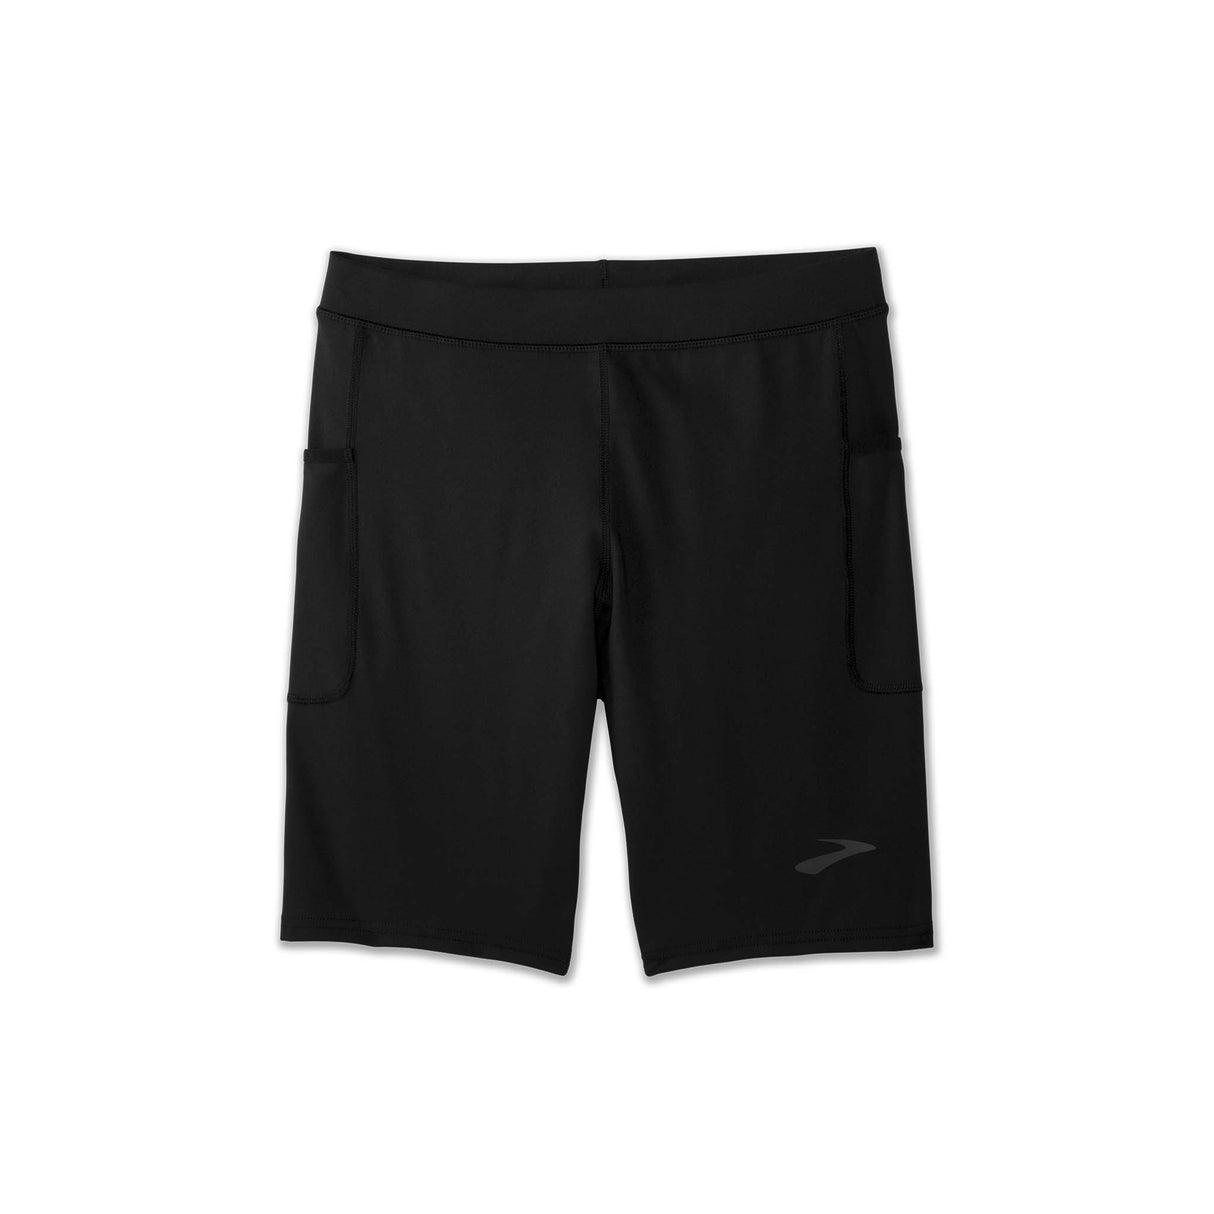 Brooks Source shorts 9 pouces type cuissards de course a pied noir homme